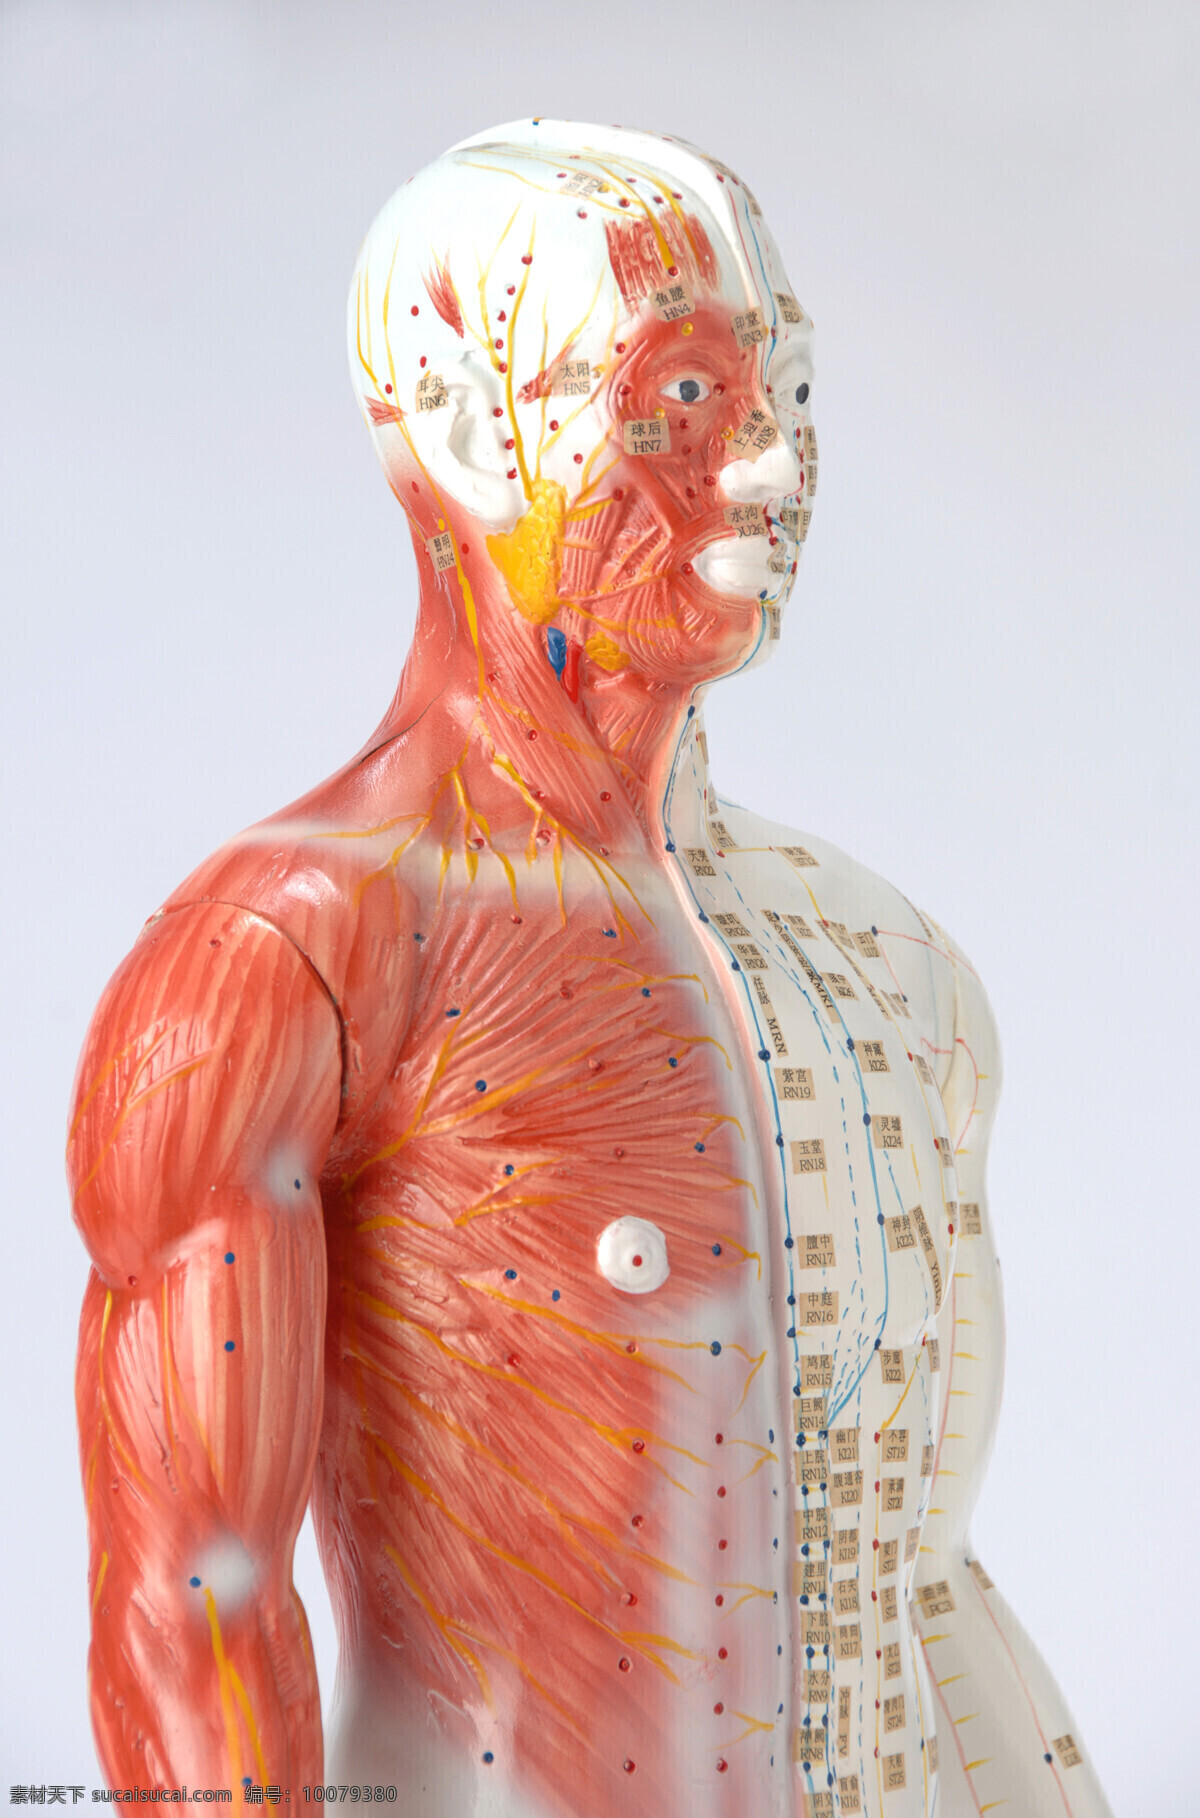 人体 穴位 图 男性 穴位图 人体肌肉 肌肉组织 人体肌肉器官 肌肉结构 人体解剖 医疗护理 现代科技